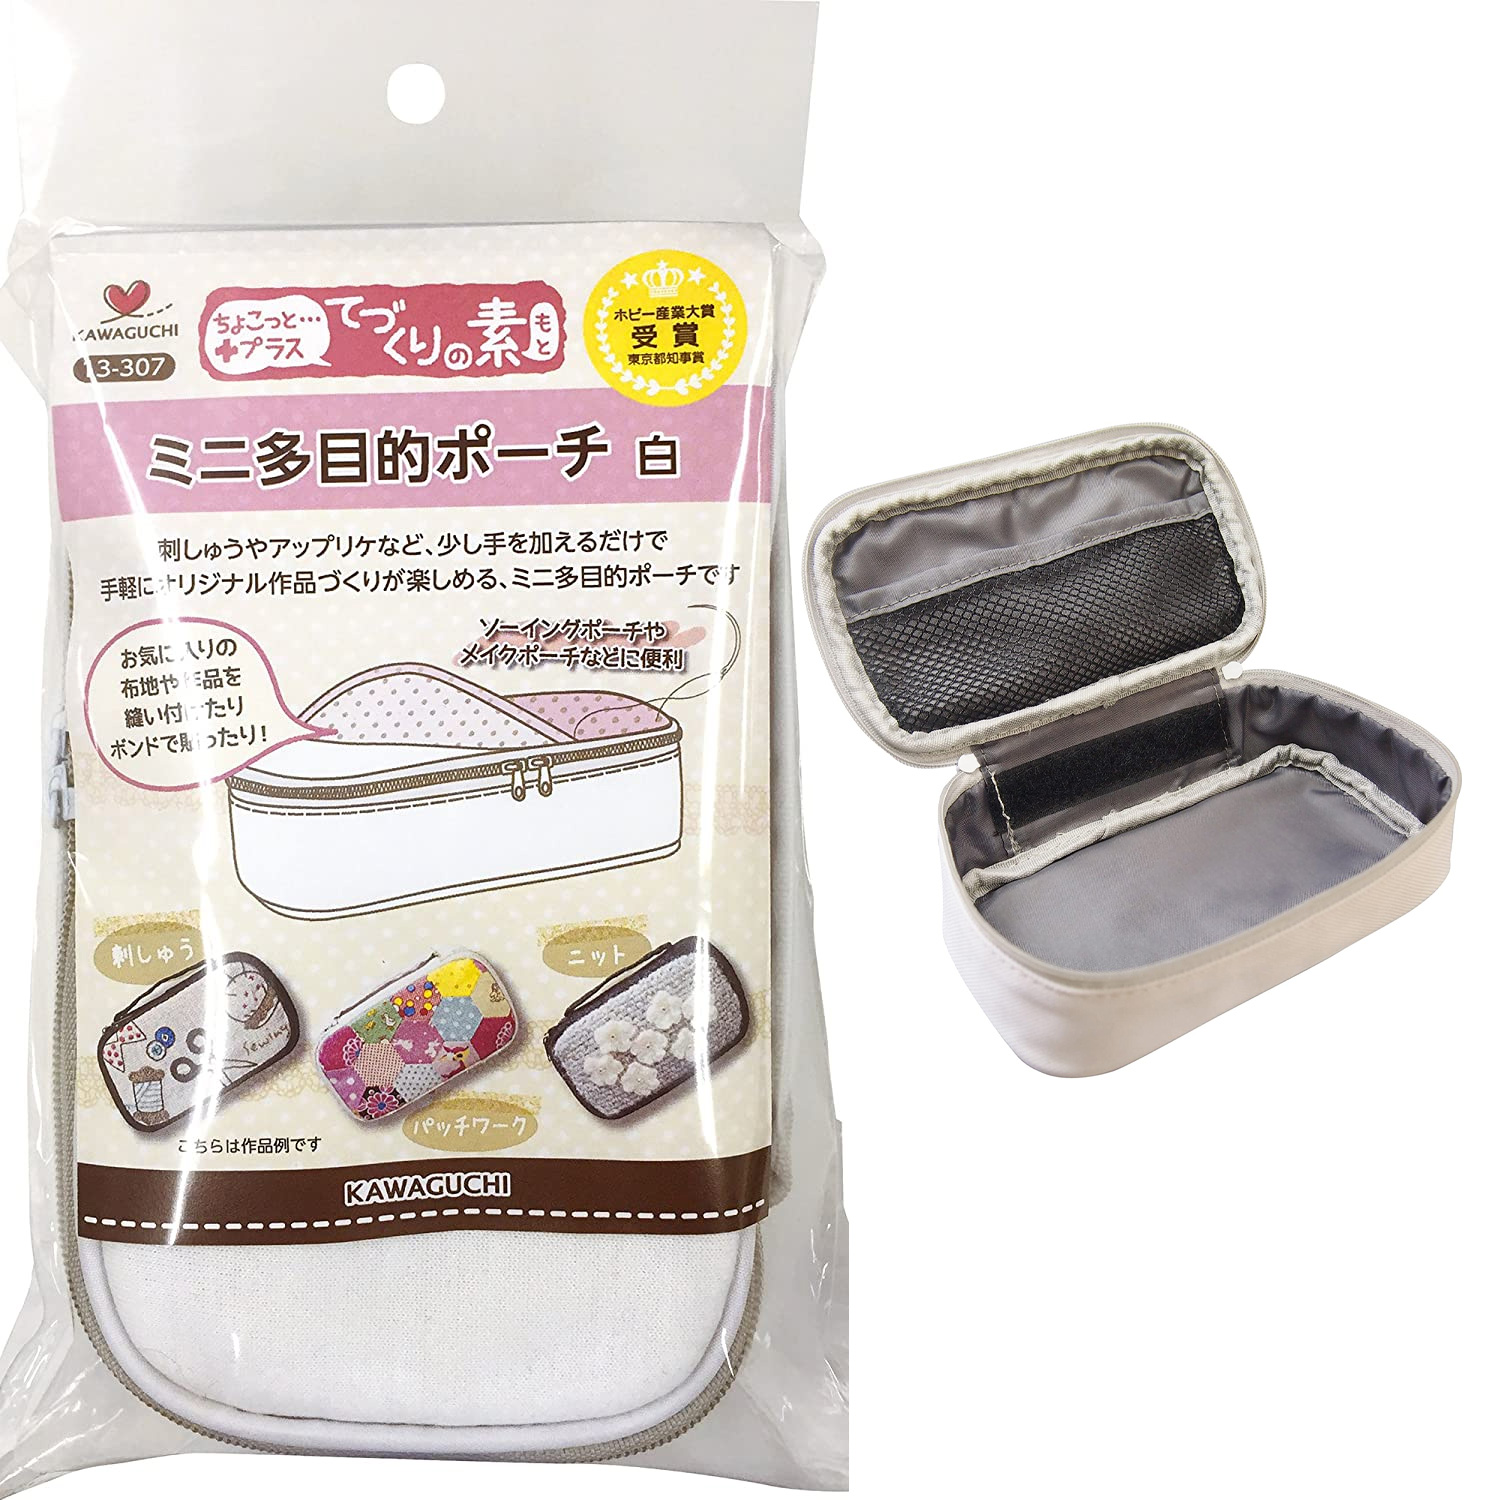 TK13307 Kawaguchi Craft Case Mini Cream (pcs)